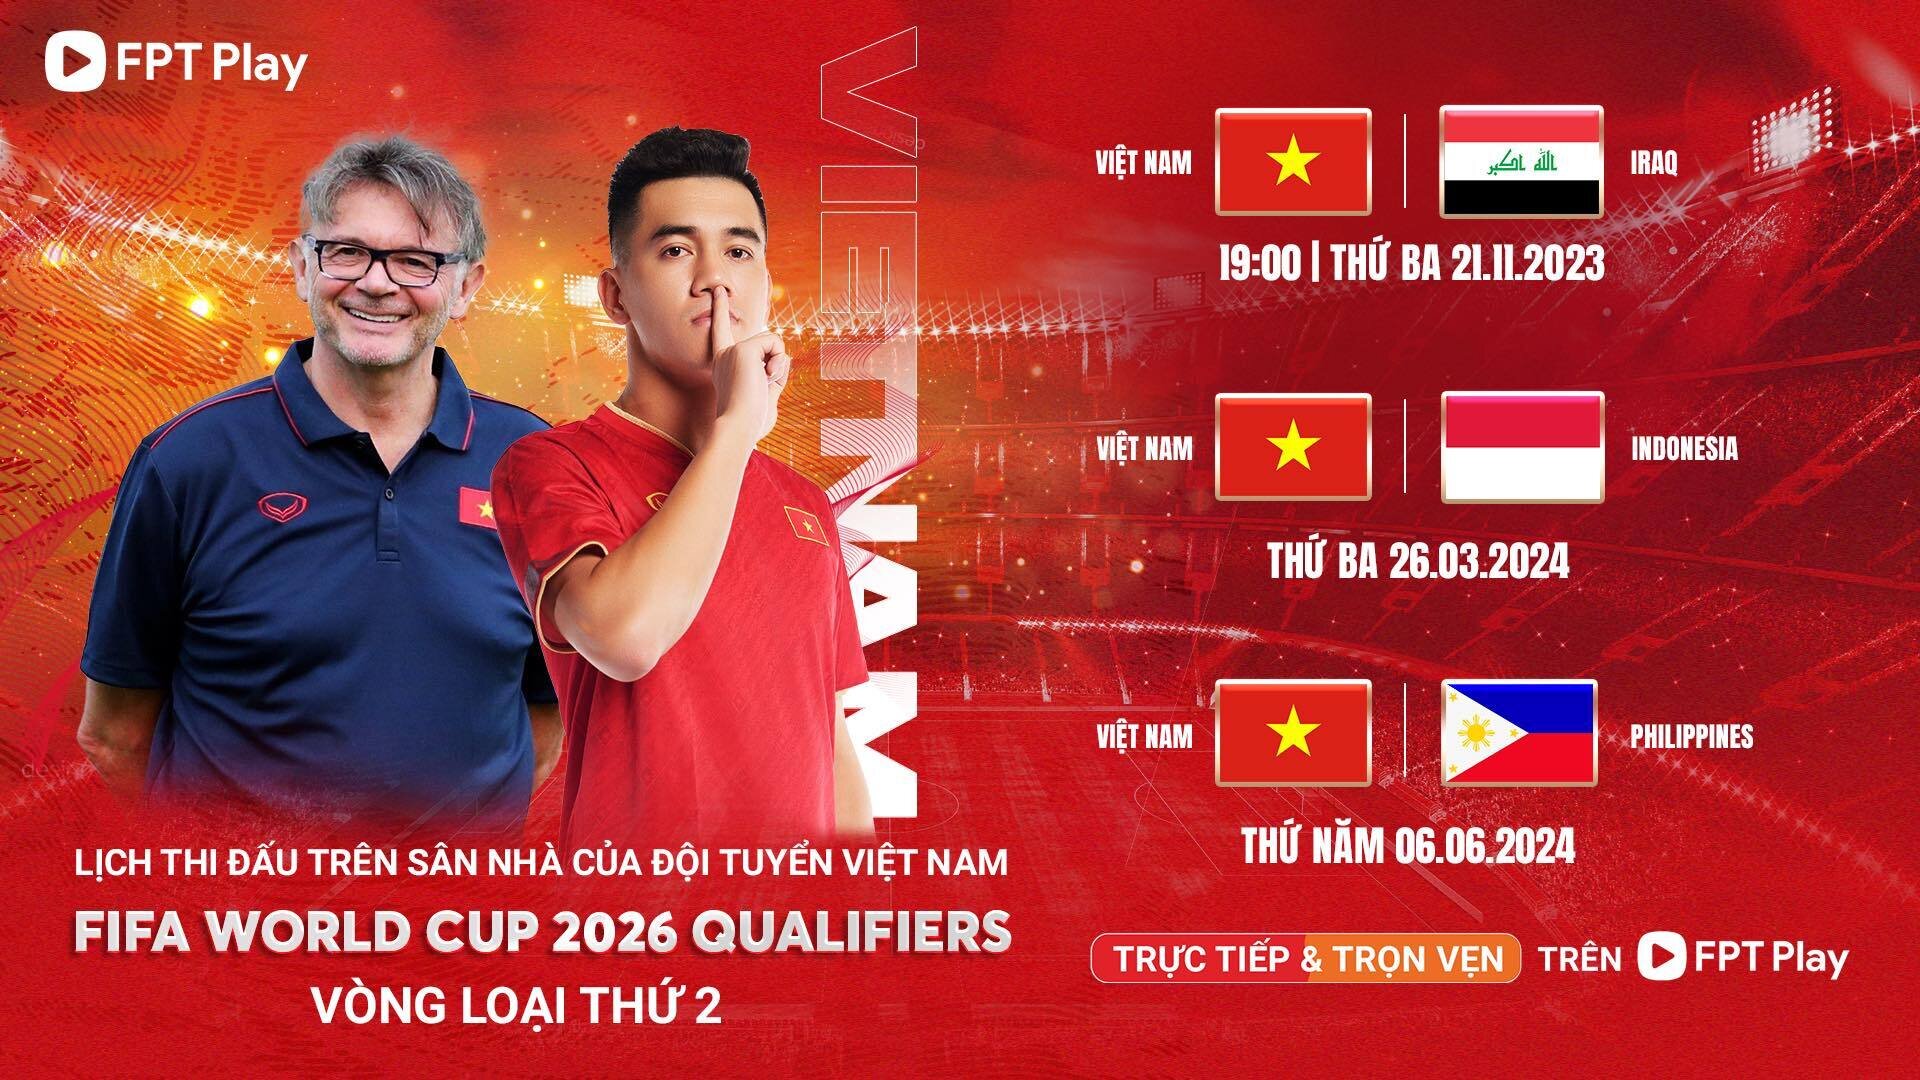 Các trận đấu trên sân nhà của đội tuyển Việt Nam tại vòng loại World Cup 2026.